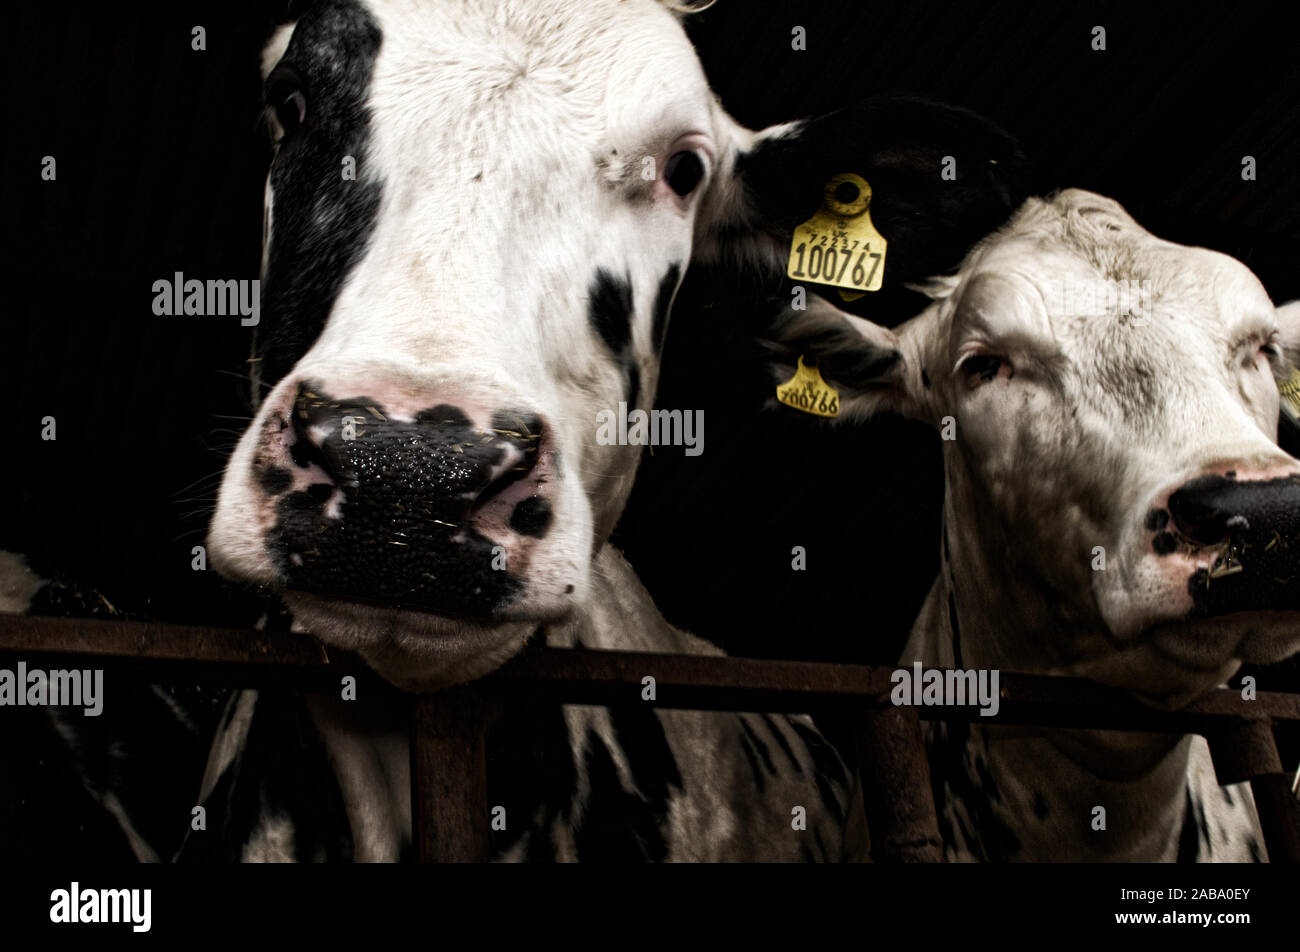 Deux vaches lait noir et blanc debout derrière les barreaux et portant des étiquettes d'identification électronique. Banque D'Images